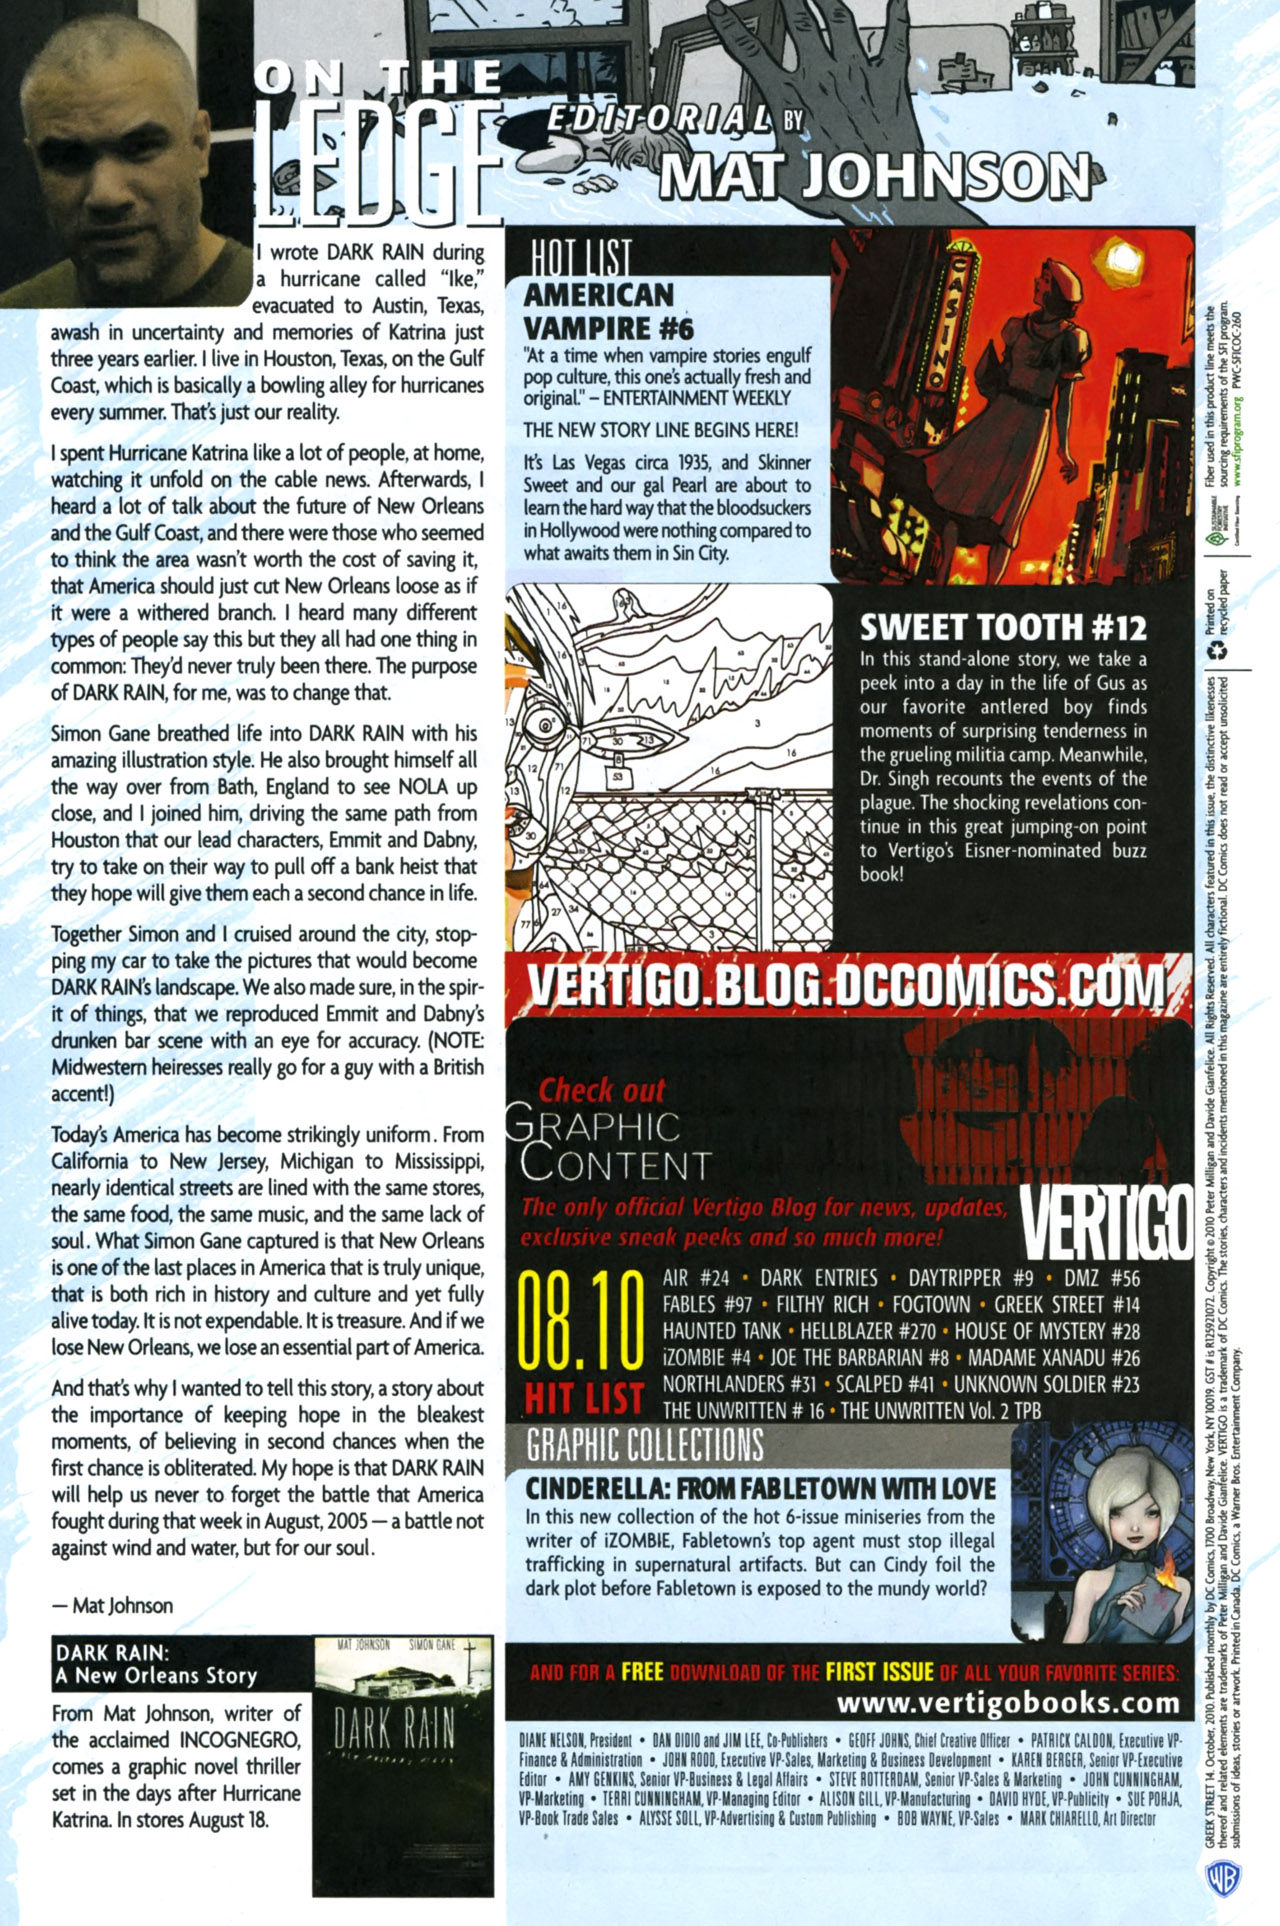 Read online Greek Street comic -  Issue #14 - 22